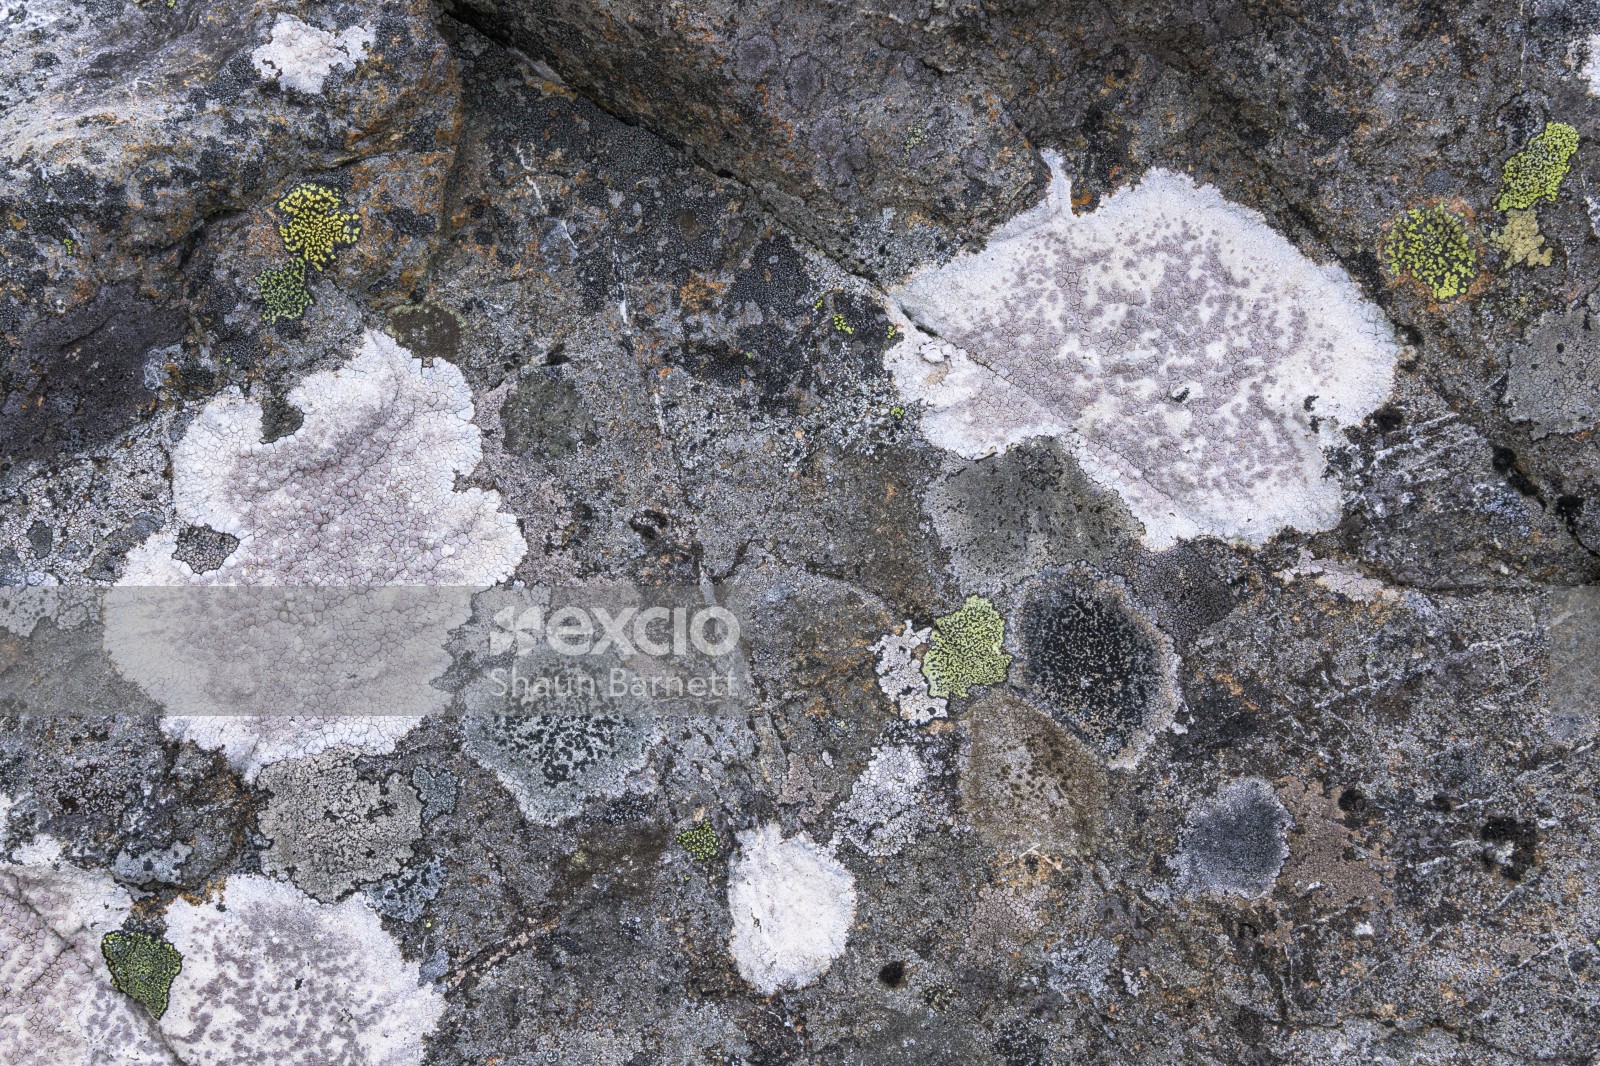 Lichen on rock, Mt Thomas